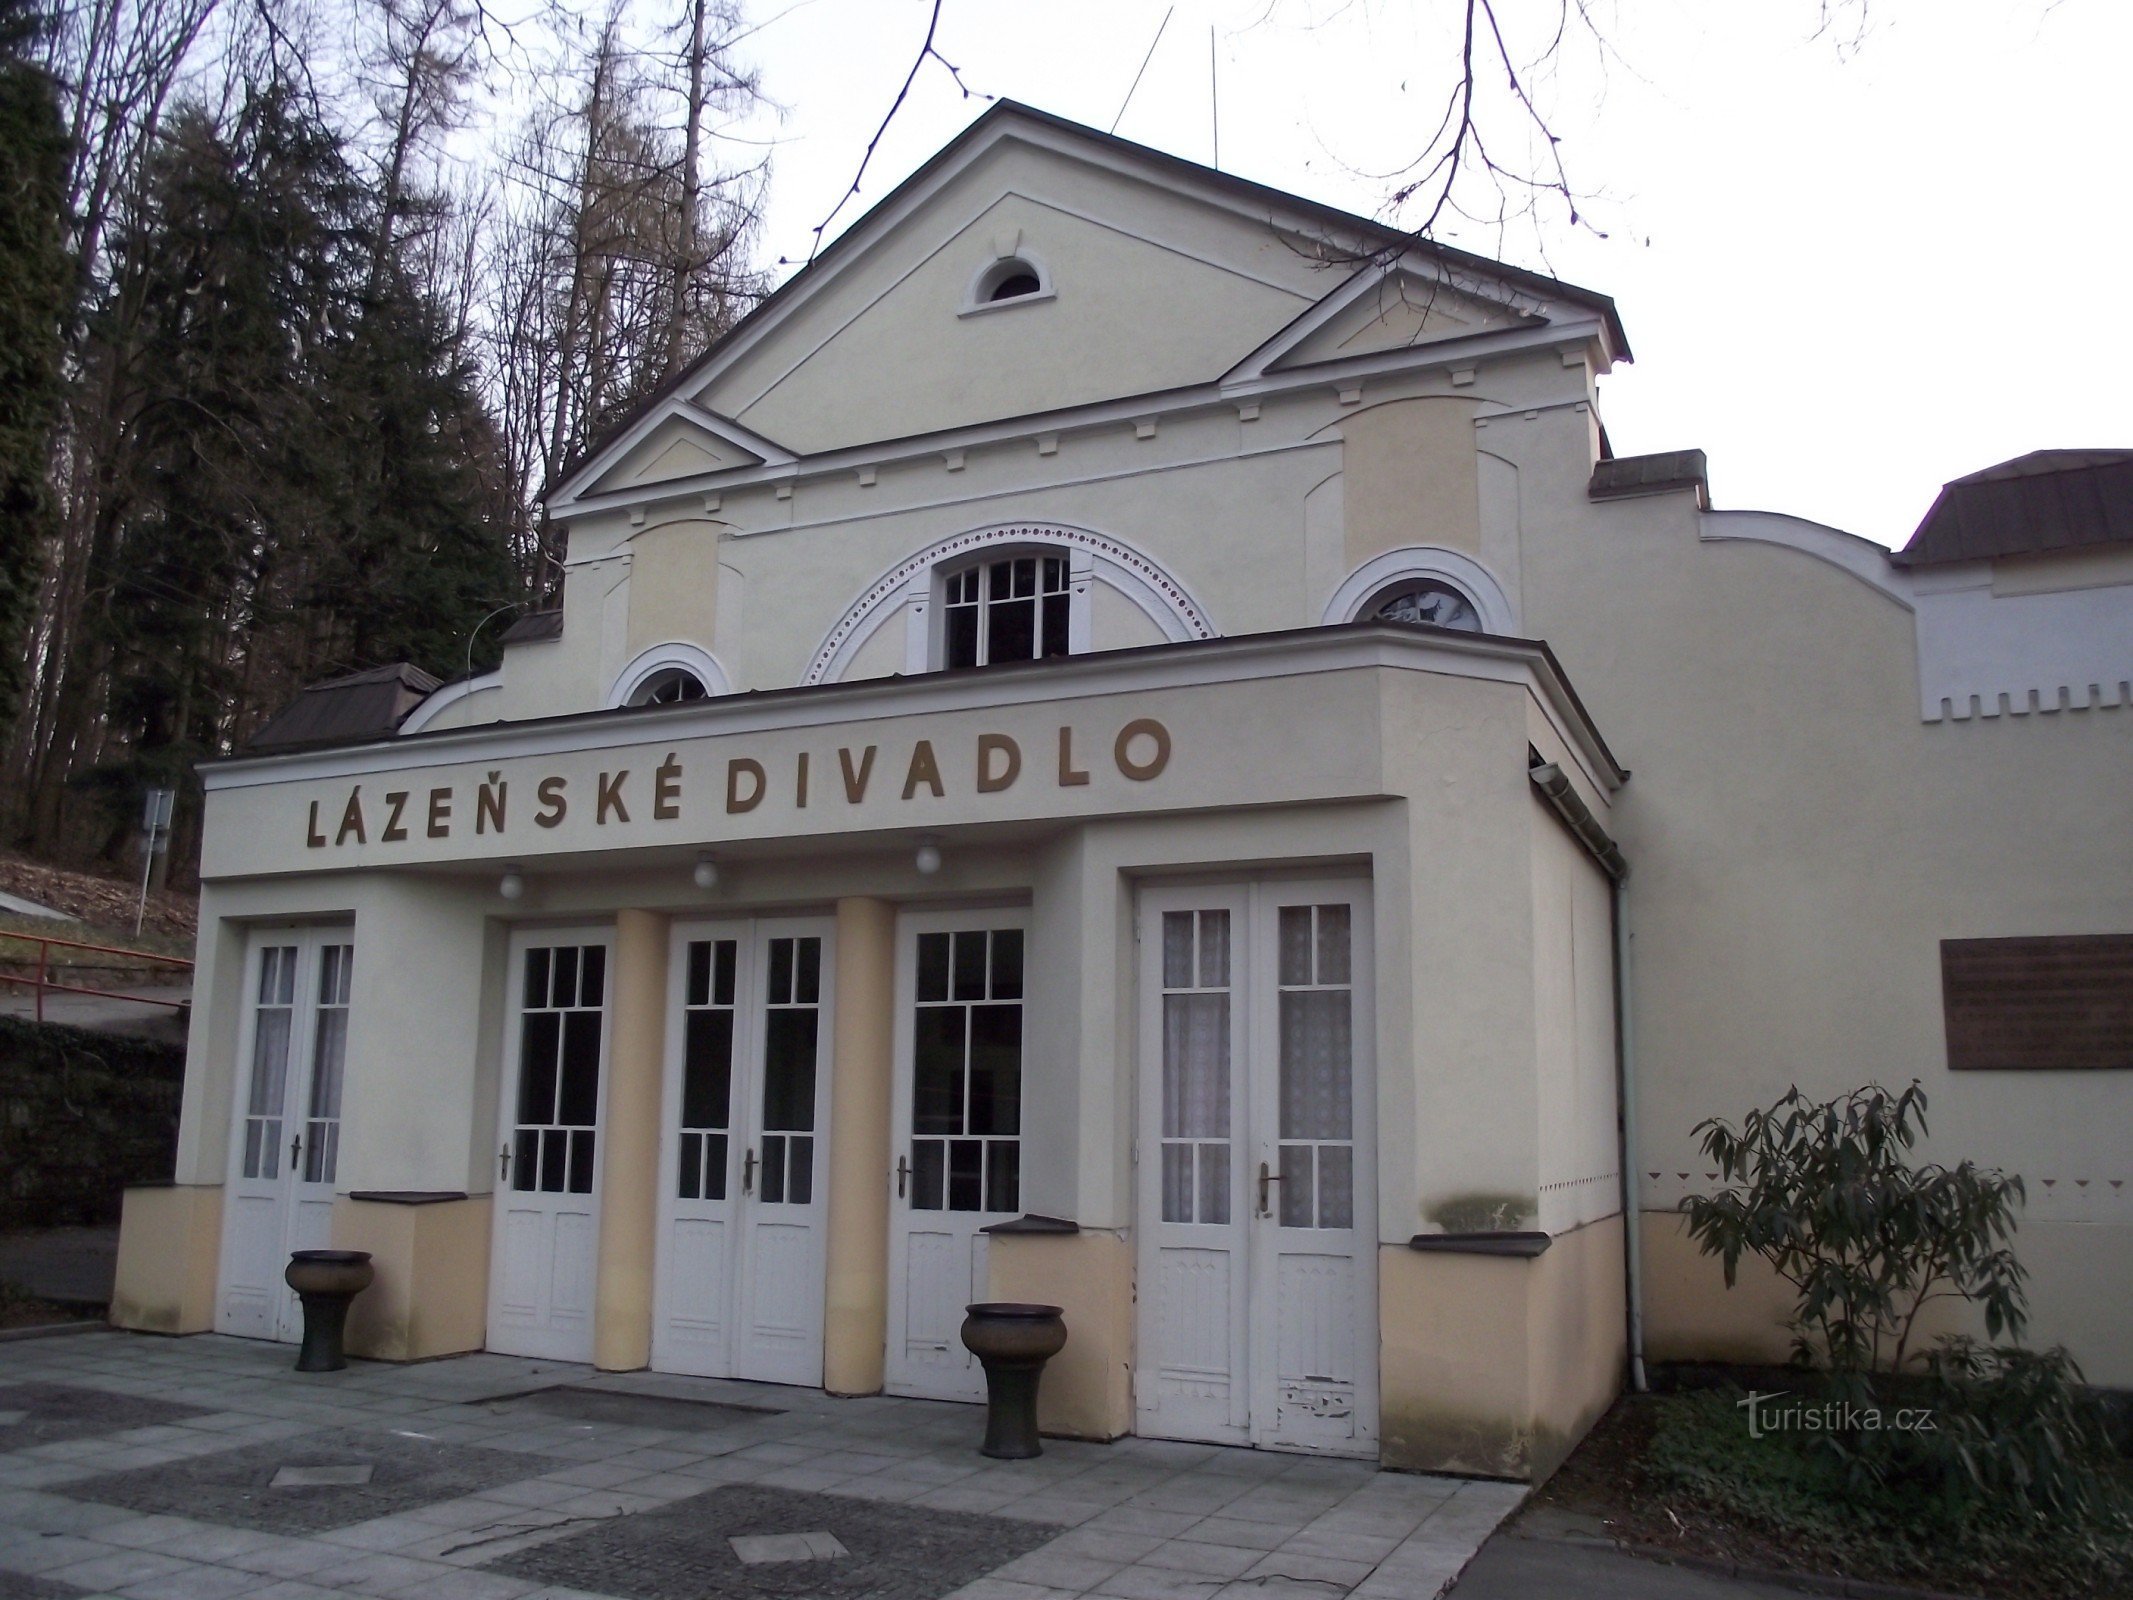 Luhačovice – Spa-teater